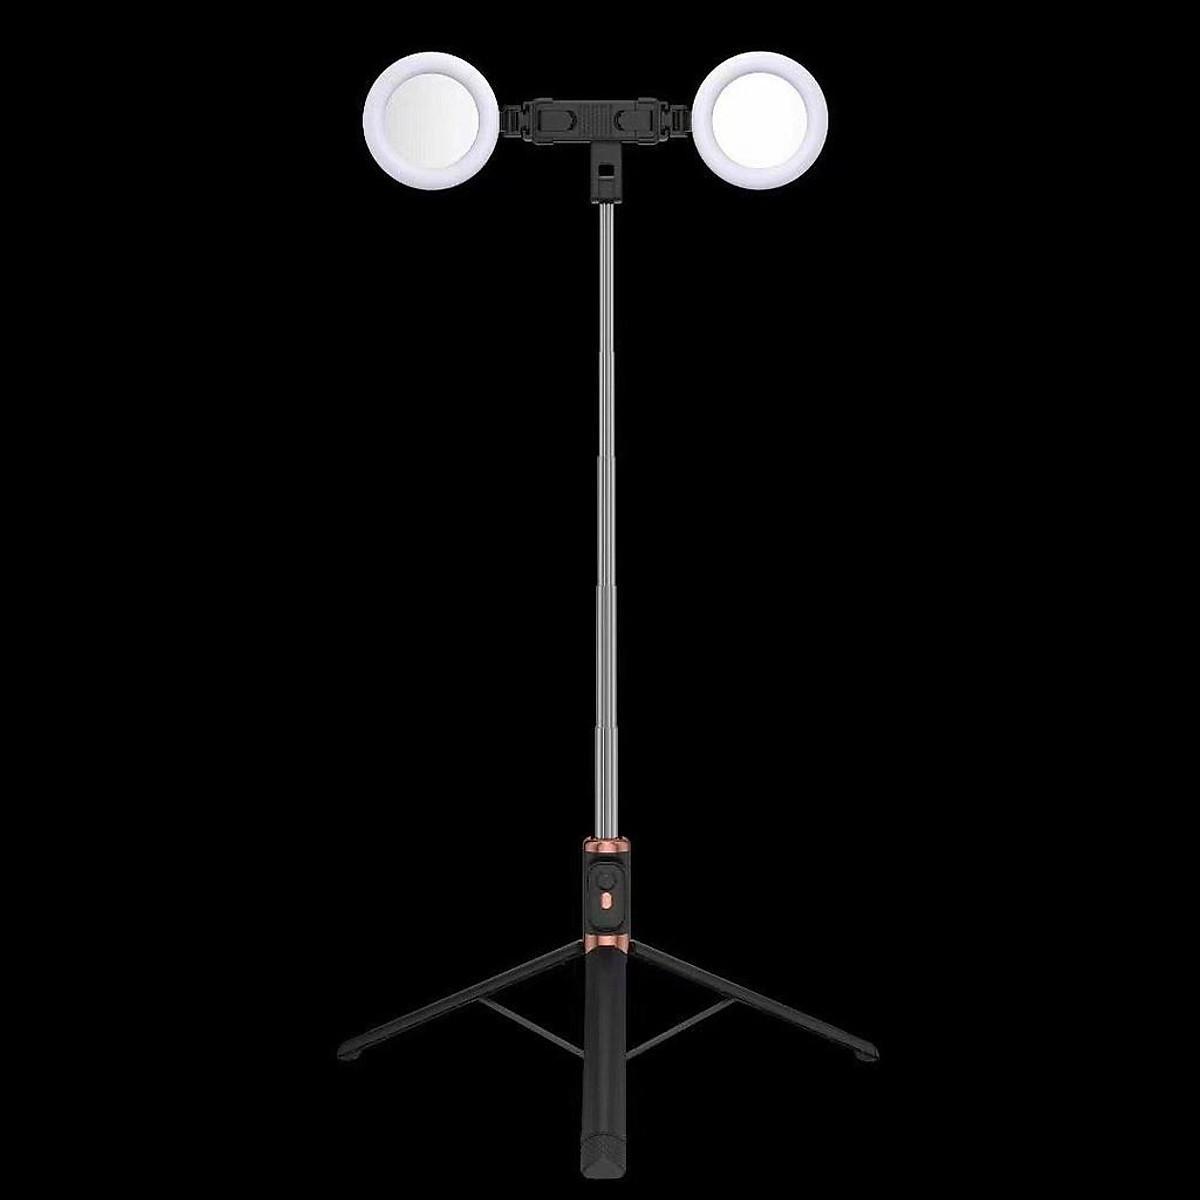 Gậy chụp ảnh selfie 3 chân kéo dài 170cm, có 2 bóng đèn LED trợ sáng và Bluetooth điều khiển từ xa lên đến 10 mét, TRẮNG - TRẮNG